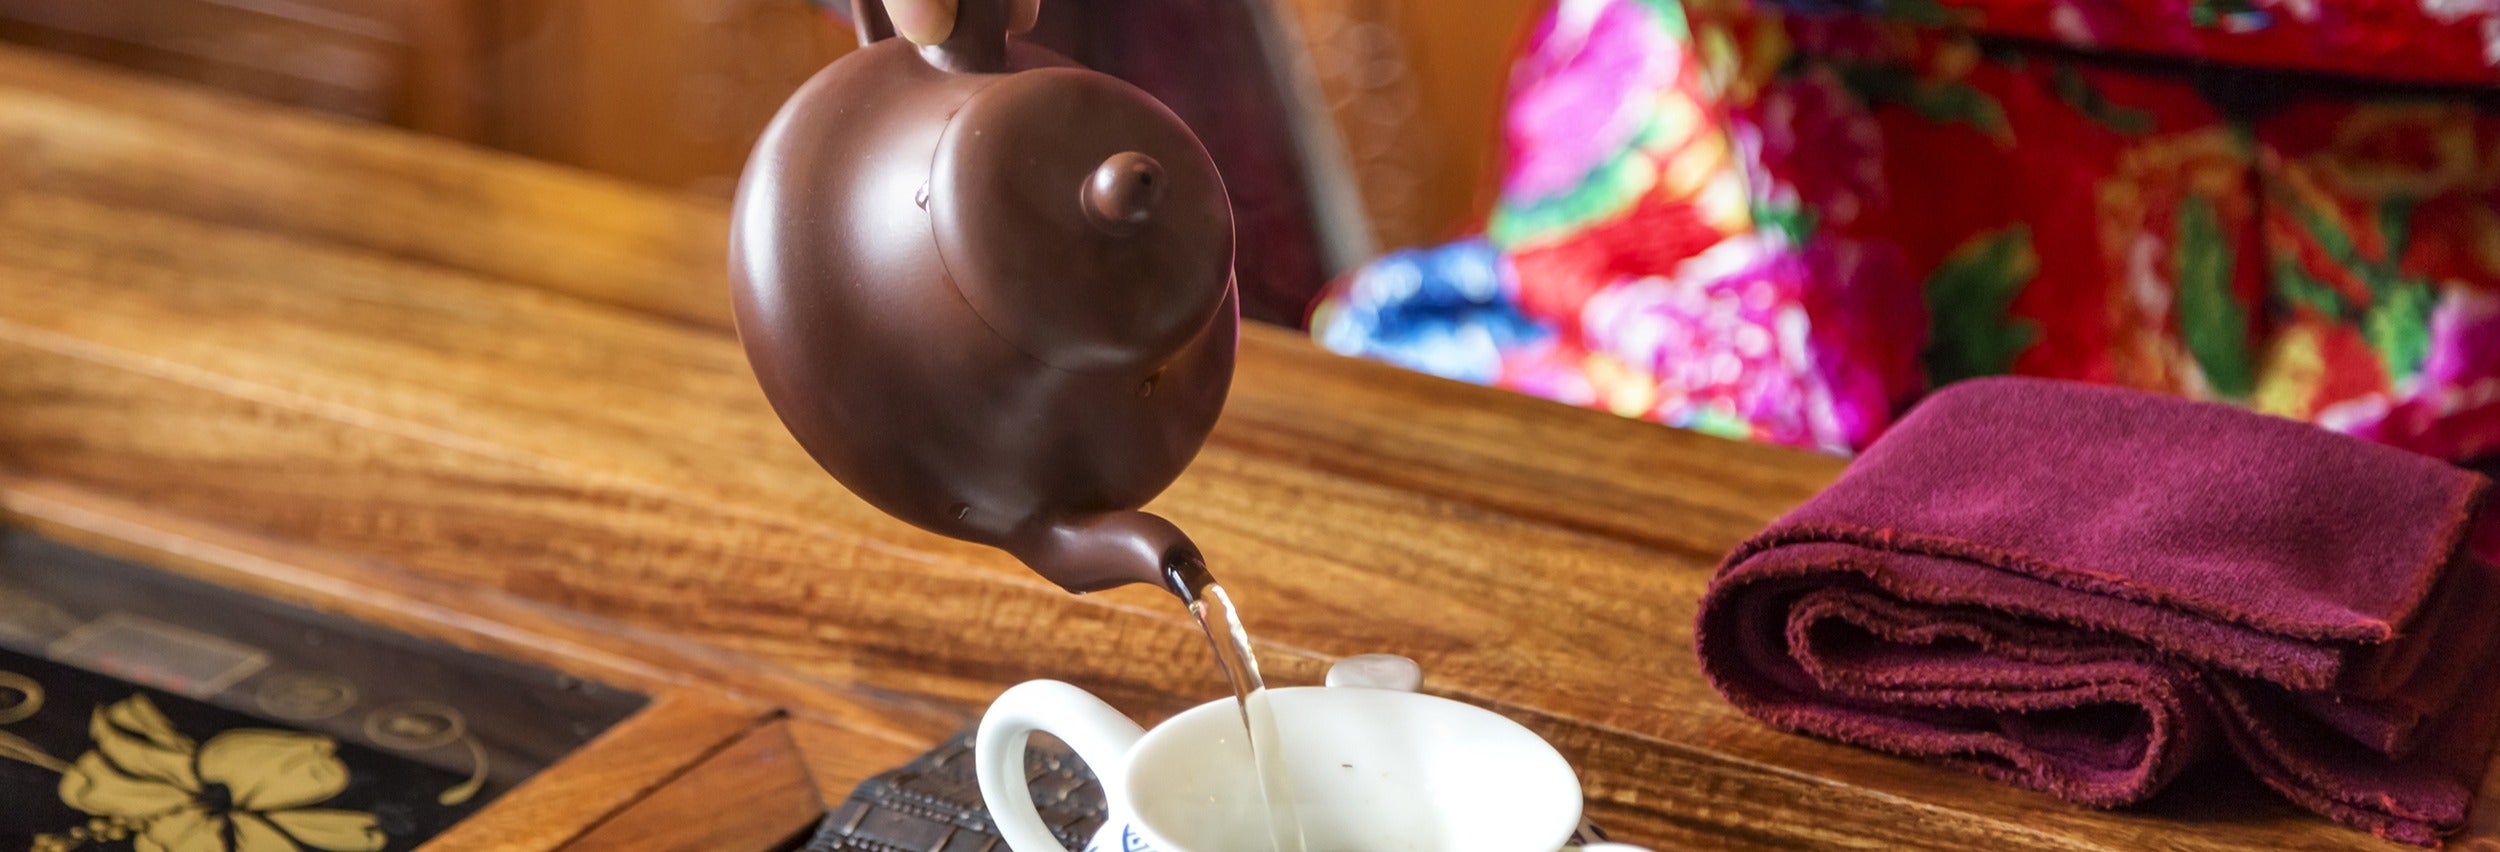 Ceremonia china del té